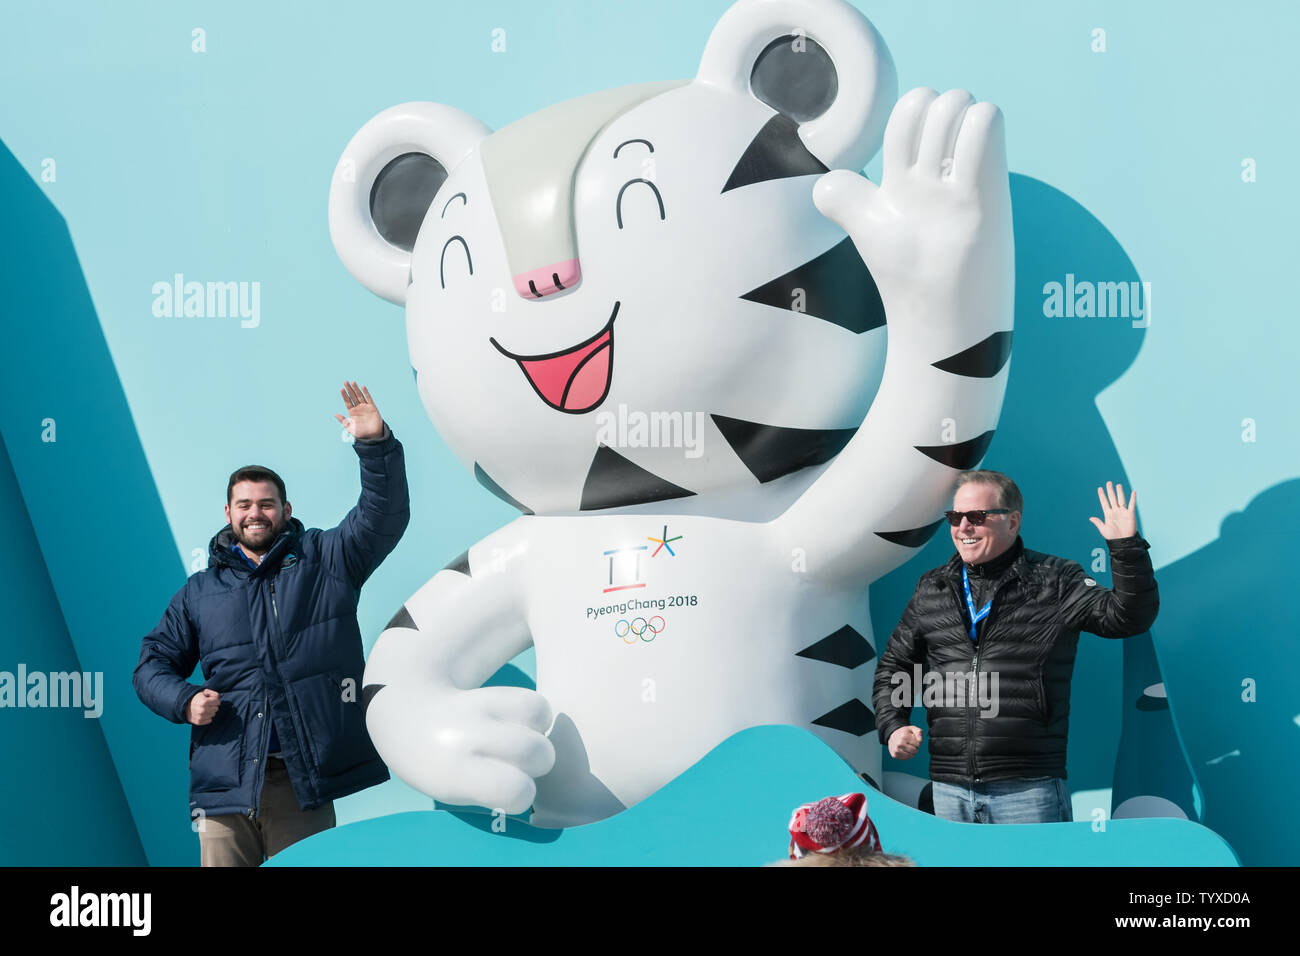 Touristen posieren für ein Foto mit dem offiziellen Maskottchen Soohorang der weiße Tiger vor dem Beginn der olympischen Winterspiele 2018 in Pyeongchang am Gangneung Coastal Cluster in Tainan, Südkorea am 8. Februar 2018. Foto von Richard Ellis/UPI Stockfoto